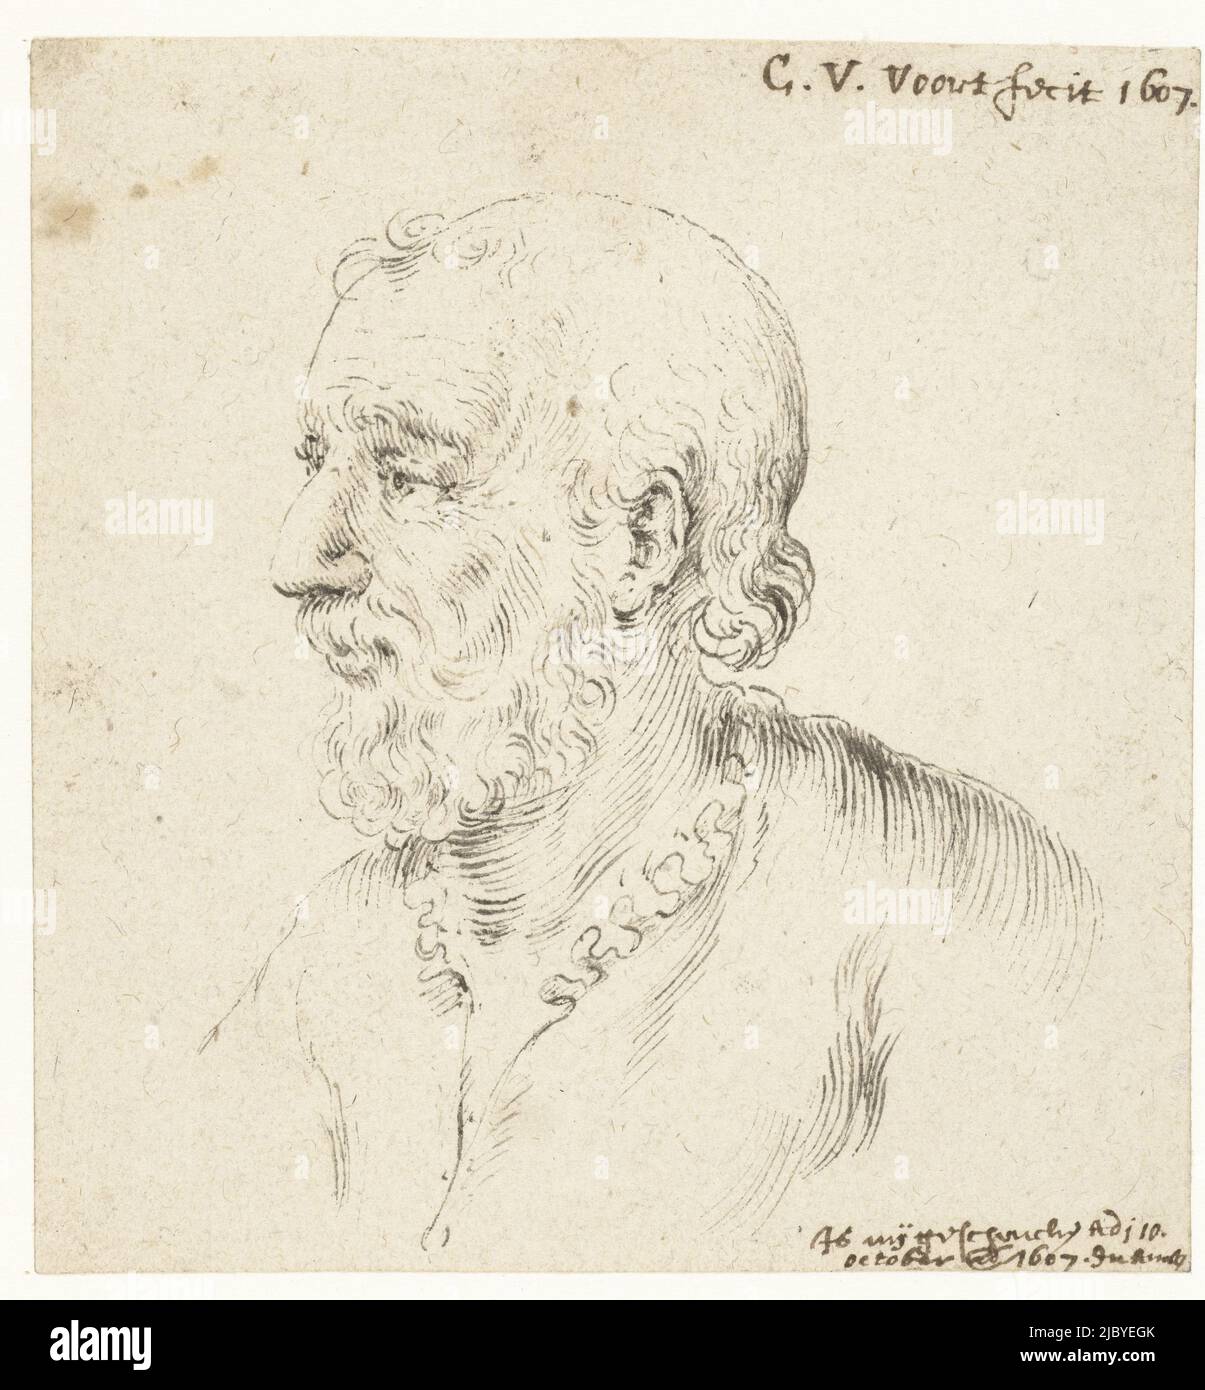 Tête d'homme avec barbe, profil à gauche, Cornelis van der Voort, 1607, dessinateur: Cornelis van der Voort, 1607 - 10-Oct-1607, papier, stylo, h 100 mm × l 95 mm Banque D'Images